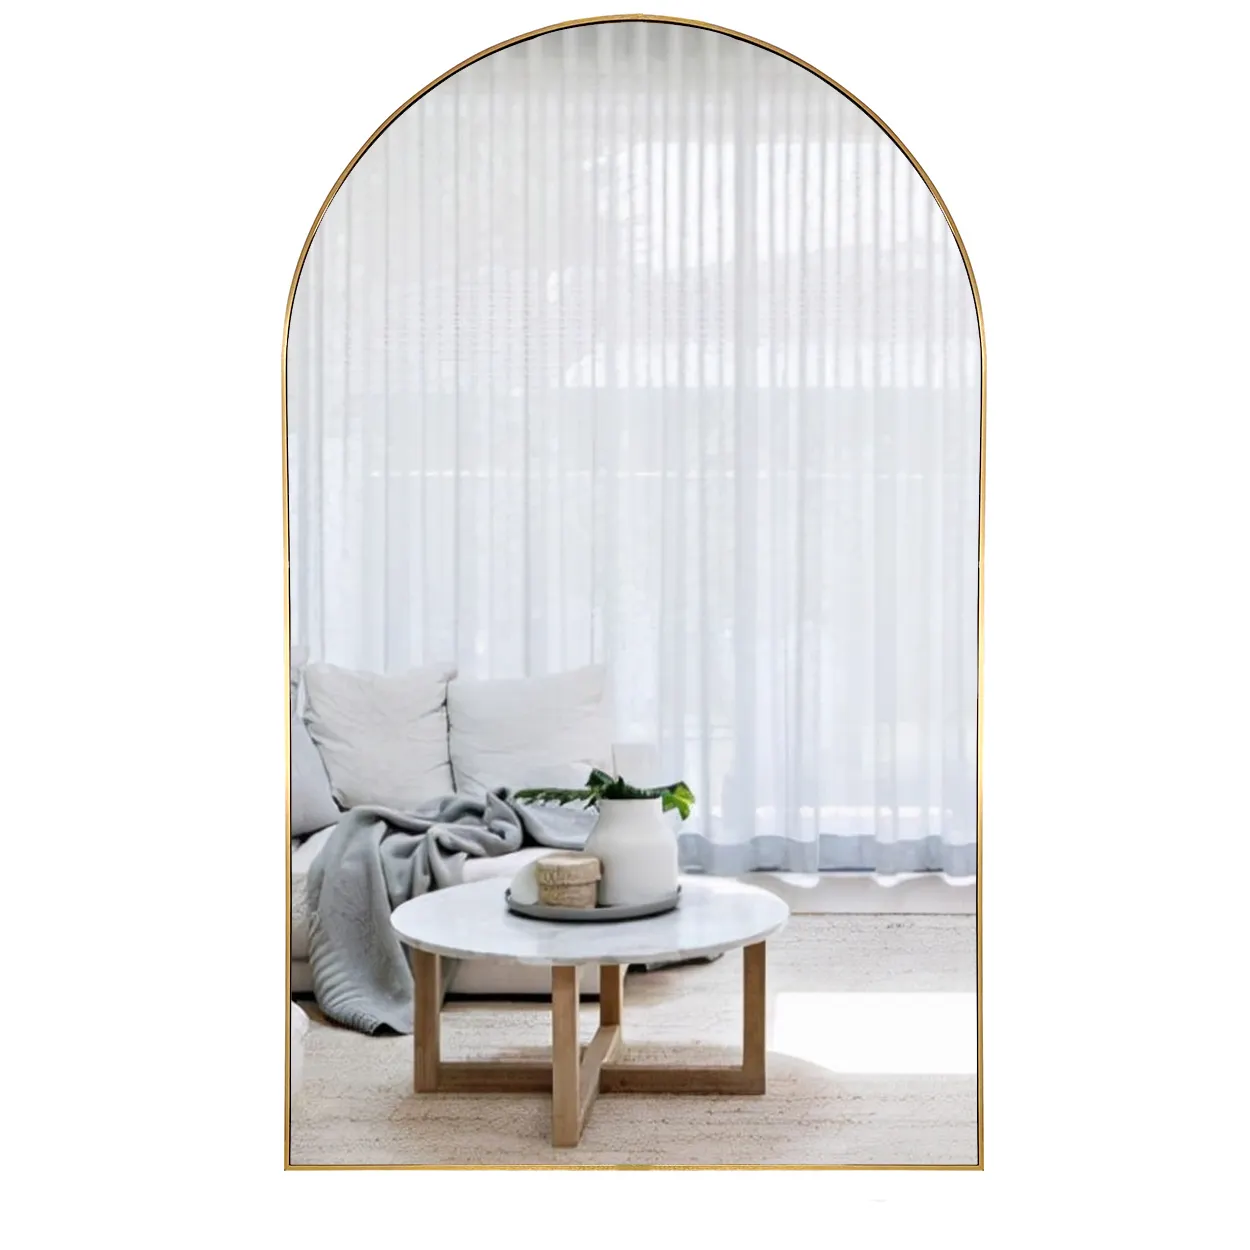 Vendita calda moderna decorazione per camera da letto grande grande struttura in ferro ad arco in metallo specchio in piedi miroir espejo spiejel